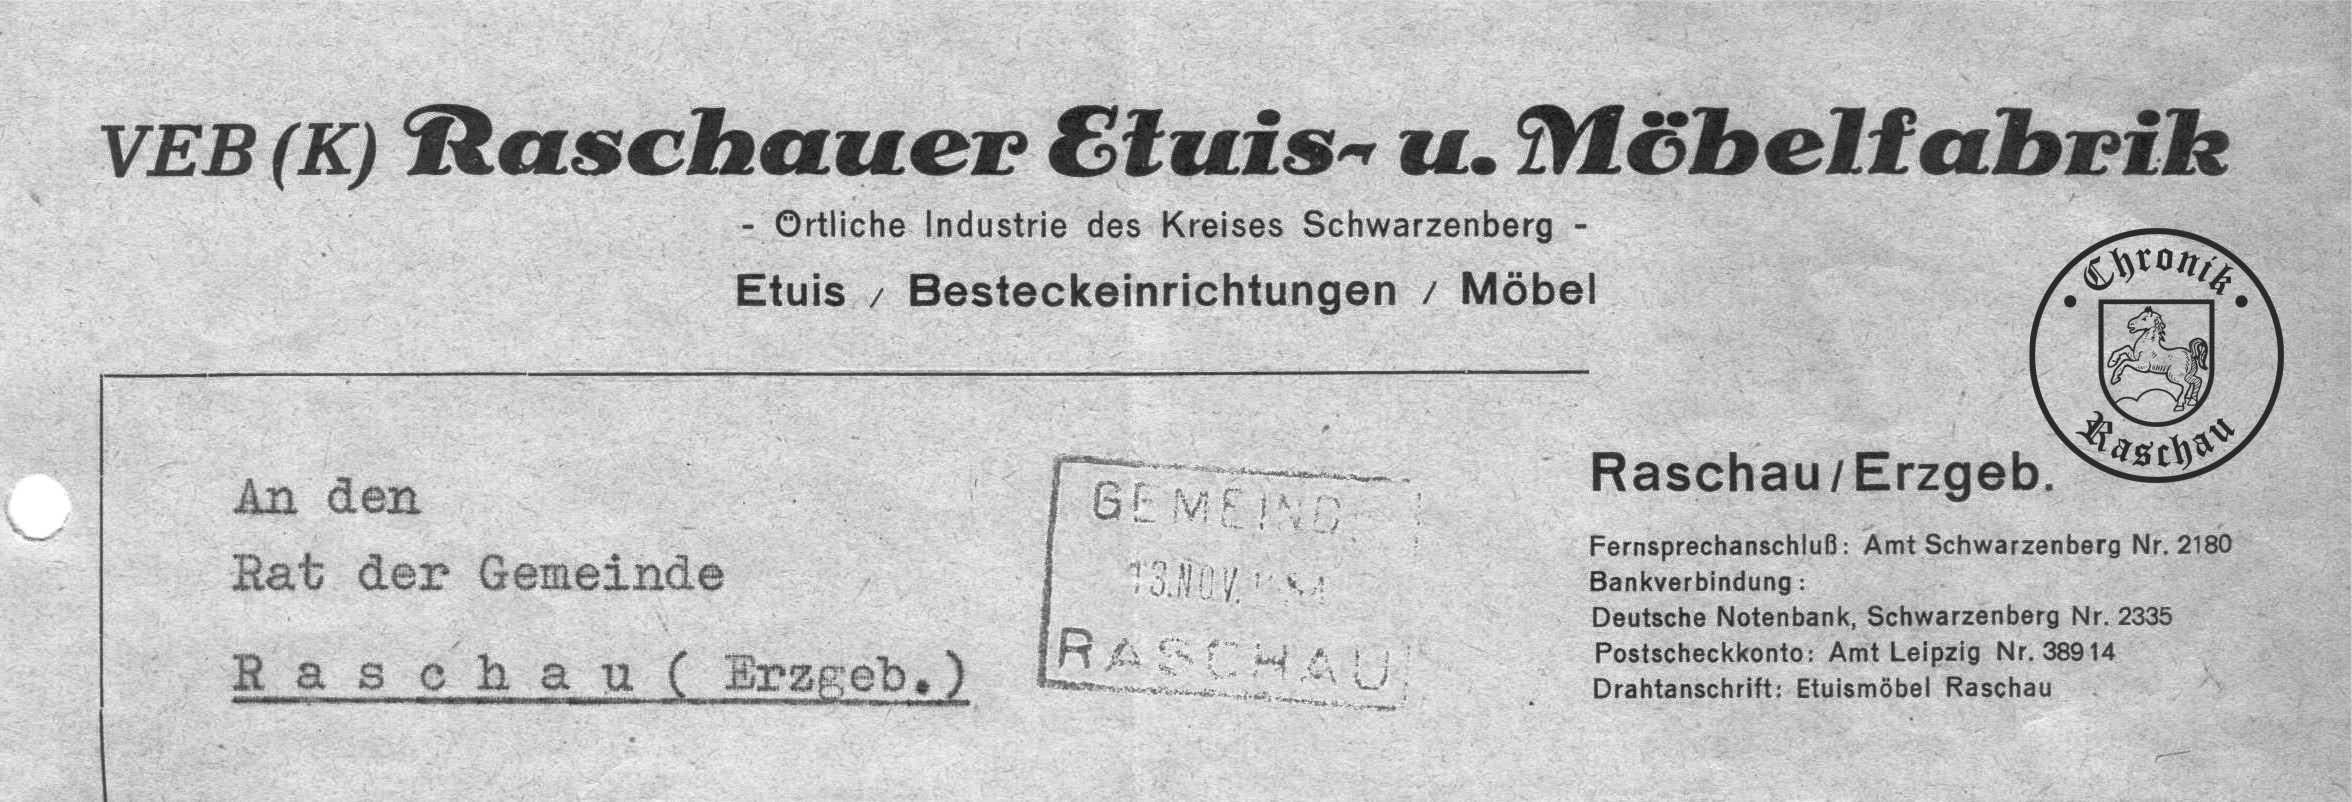 1954 Raschaue Etui und Mbelfabrik